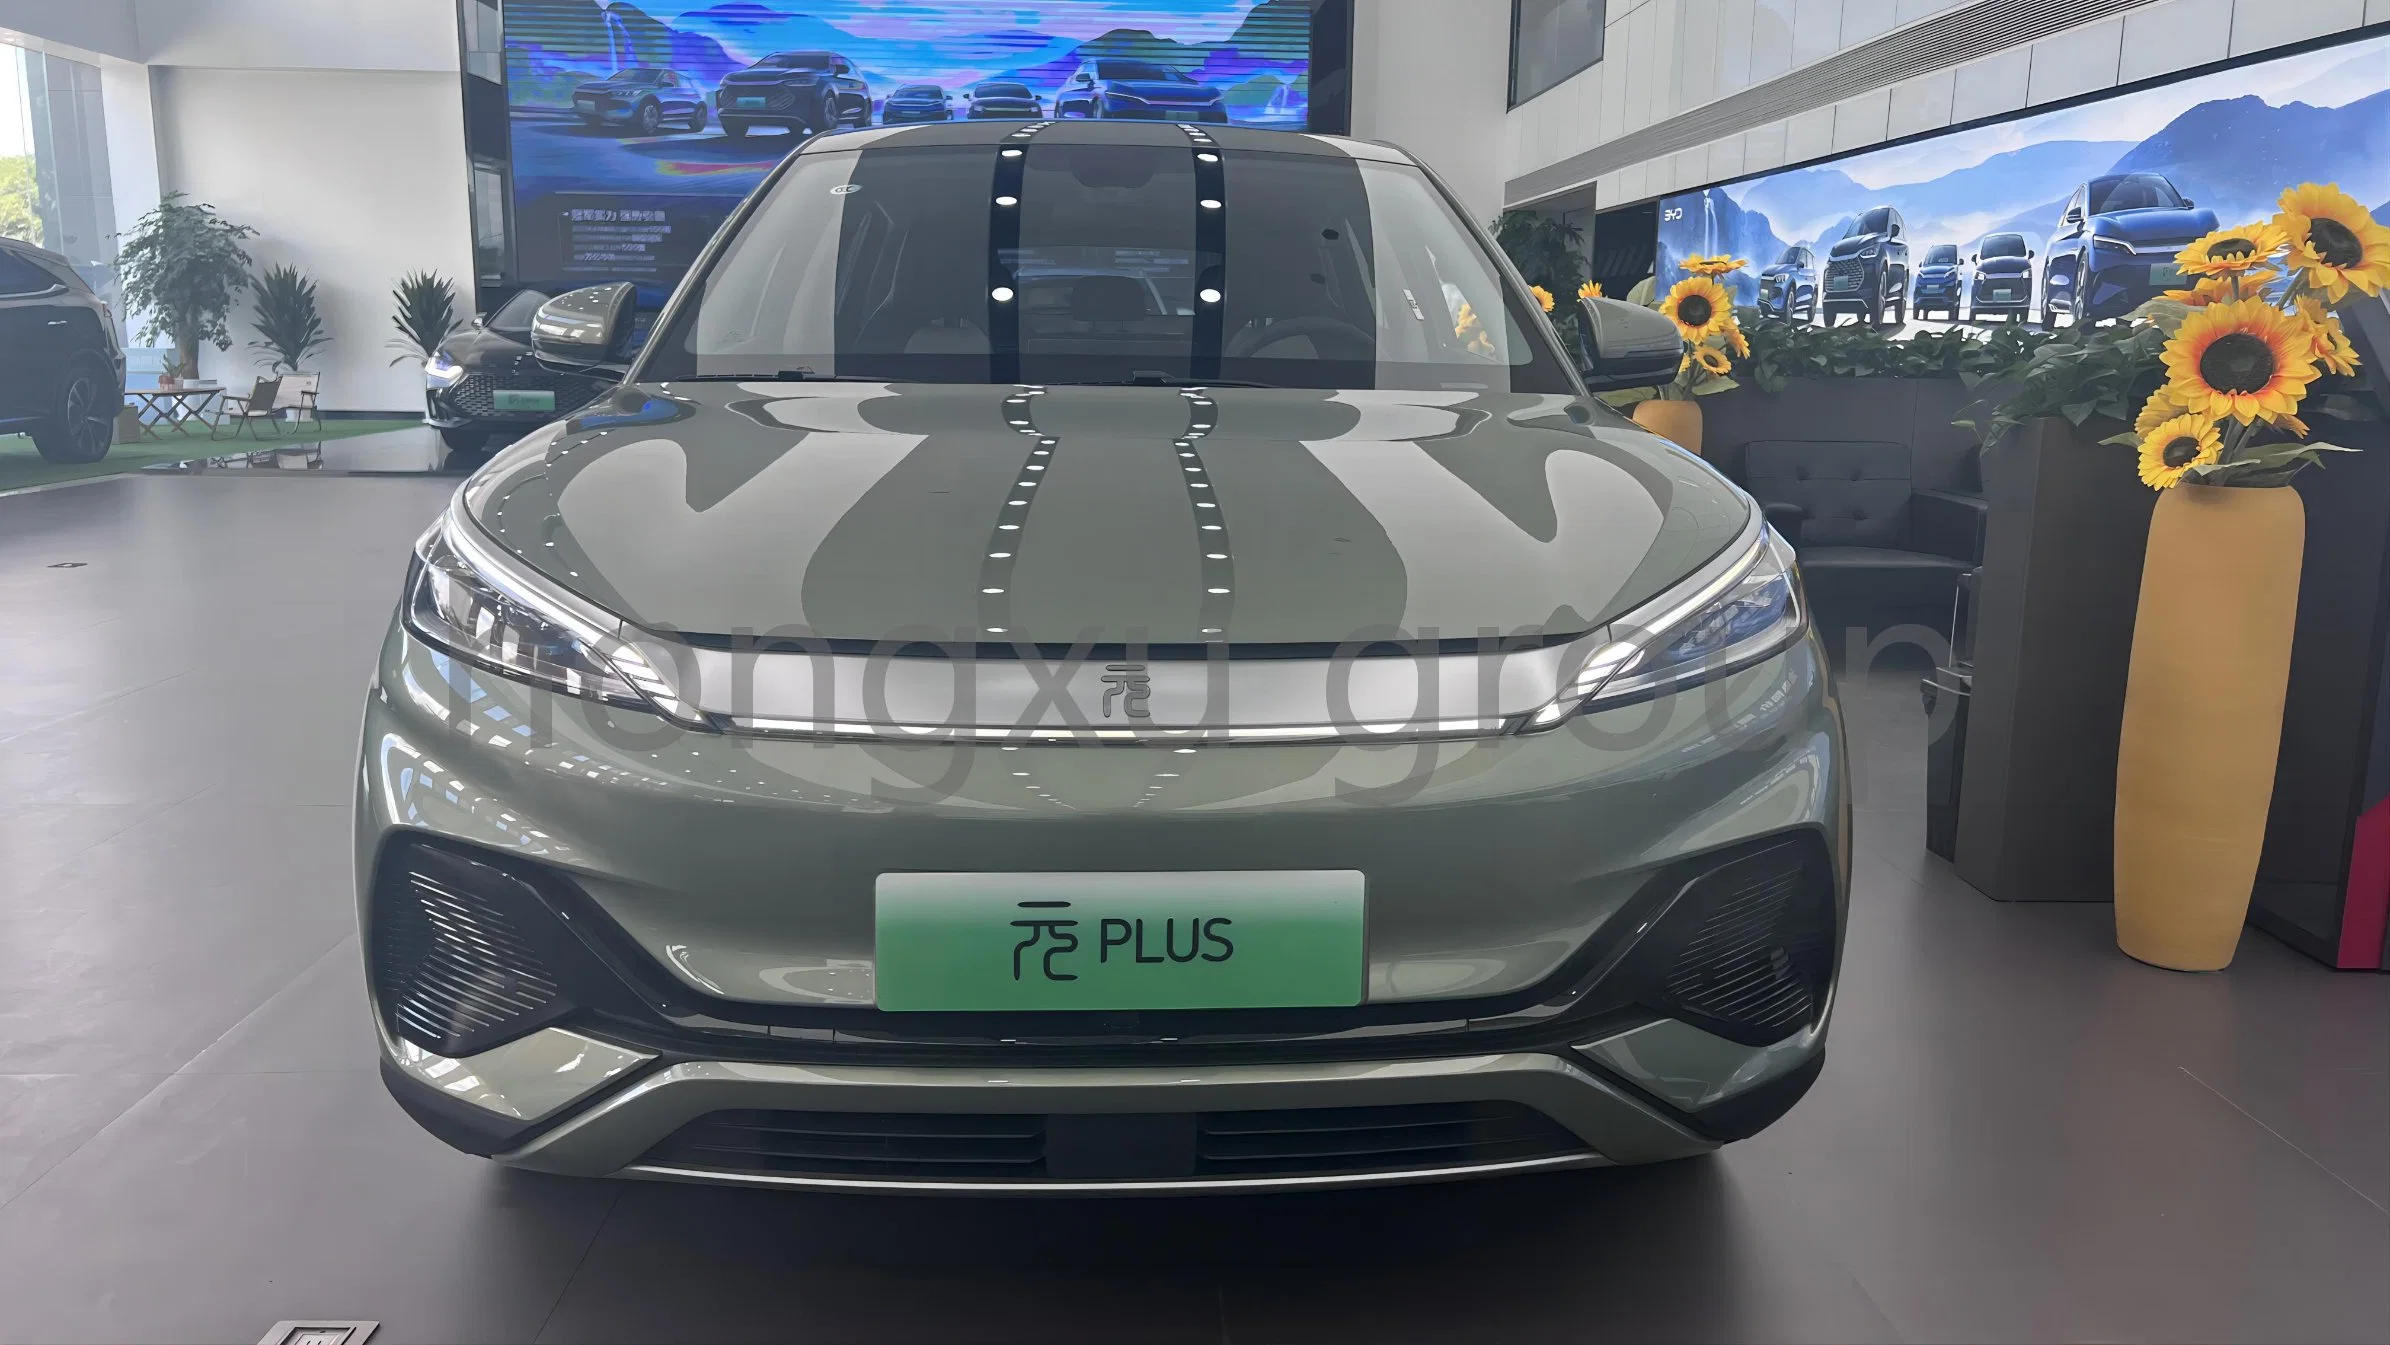 Byd Yuan Plus 510km Flagship Voiture d'occasion avec climatisation Véhicule électrique pour petit SUV Fabriqué en Chine.